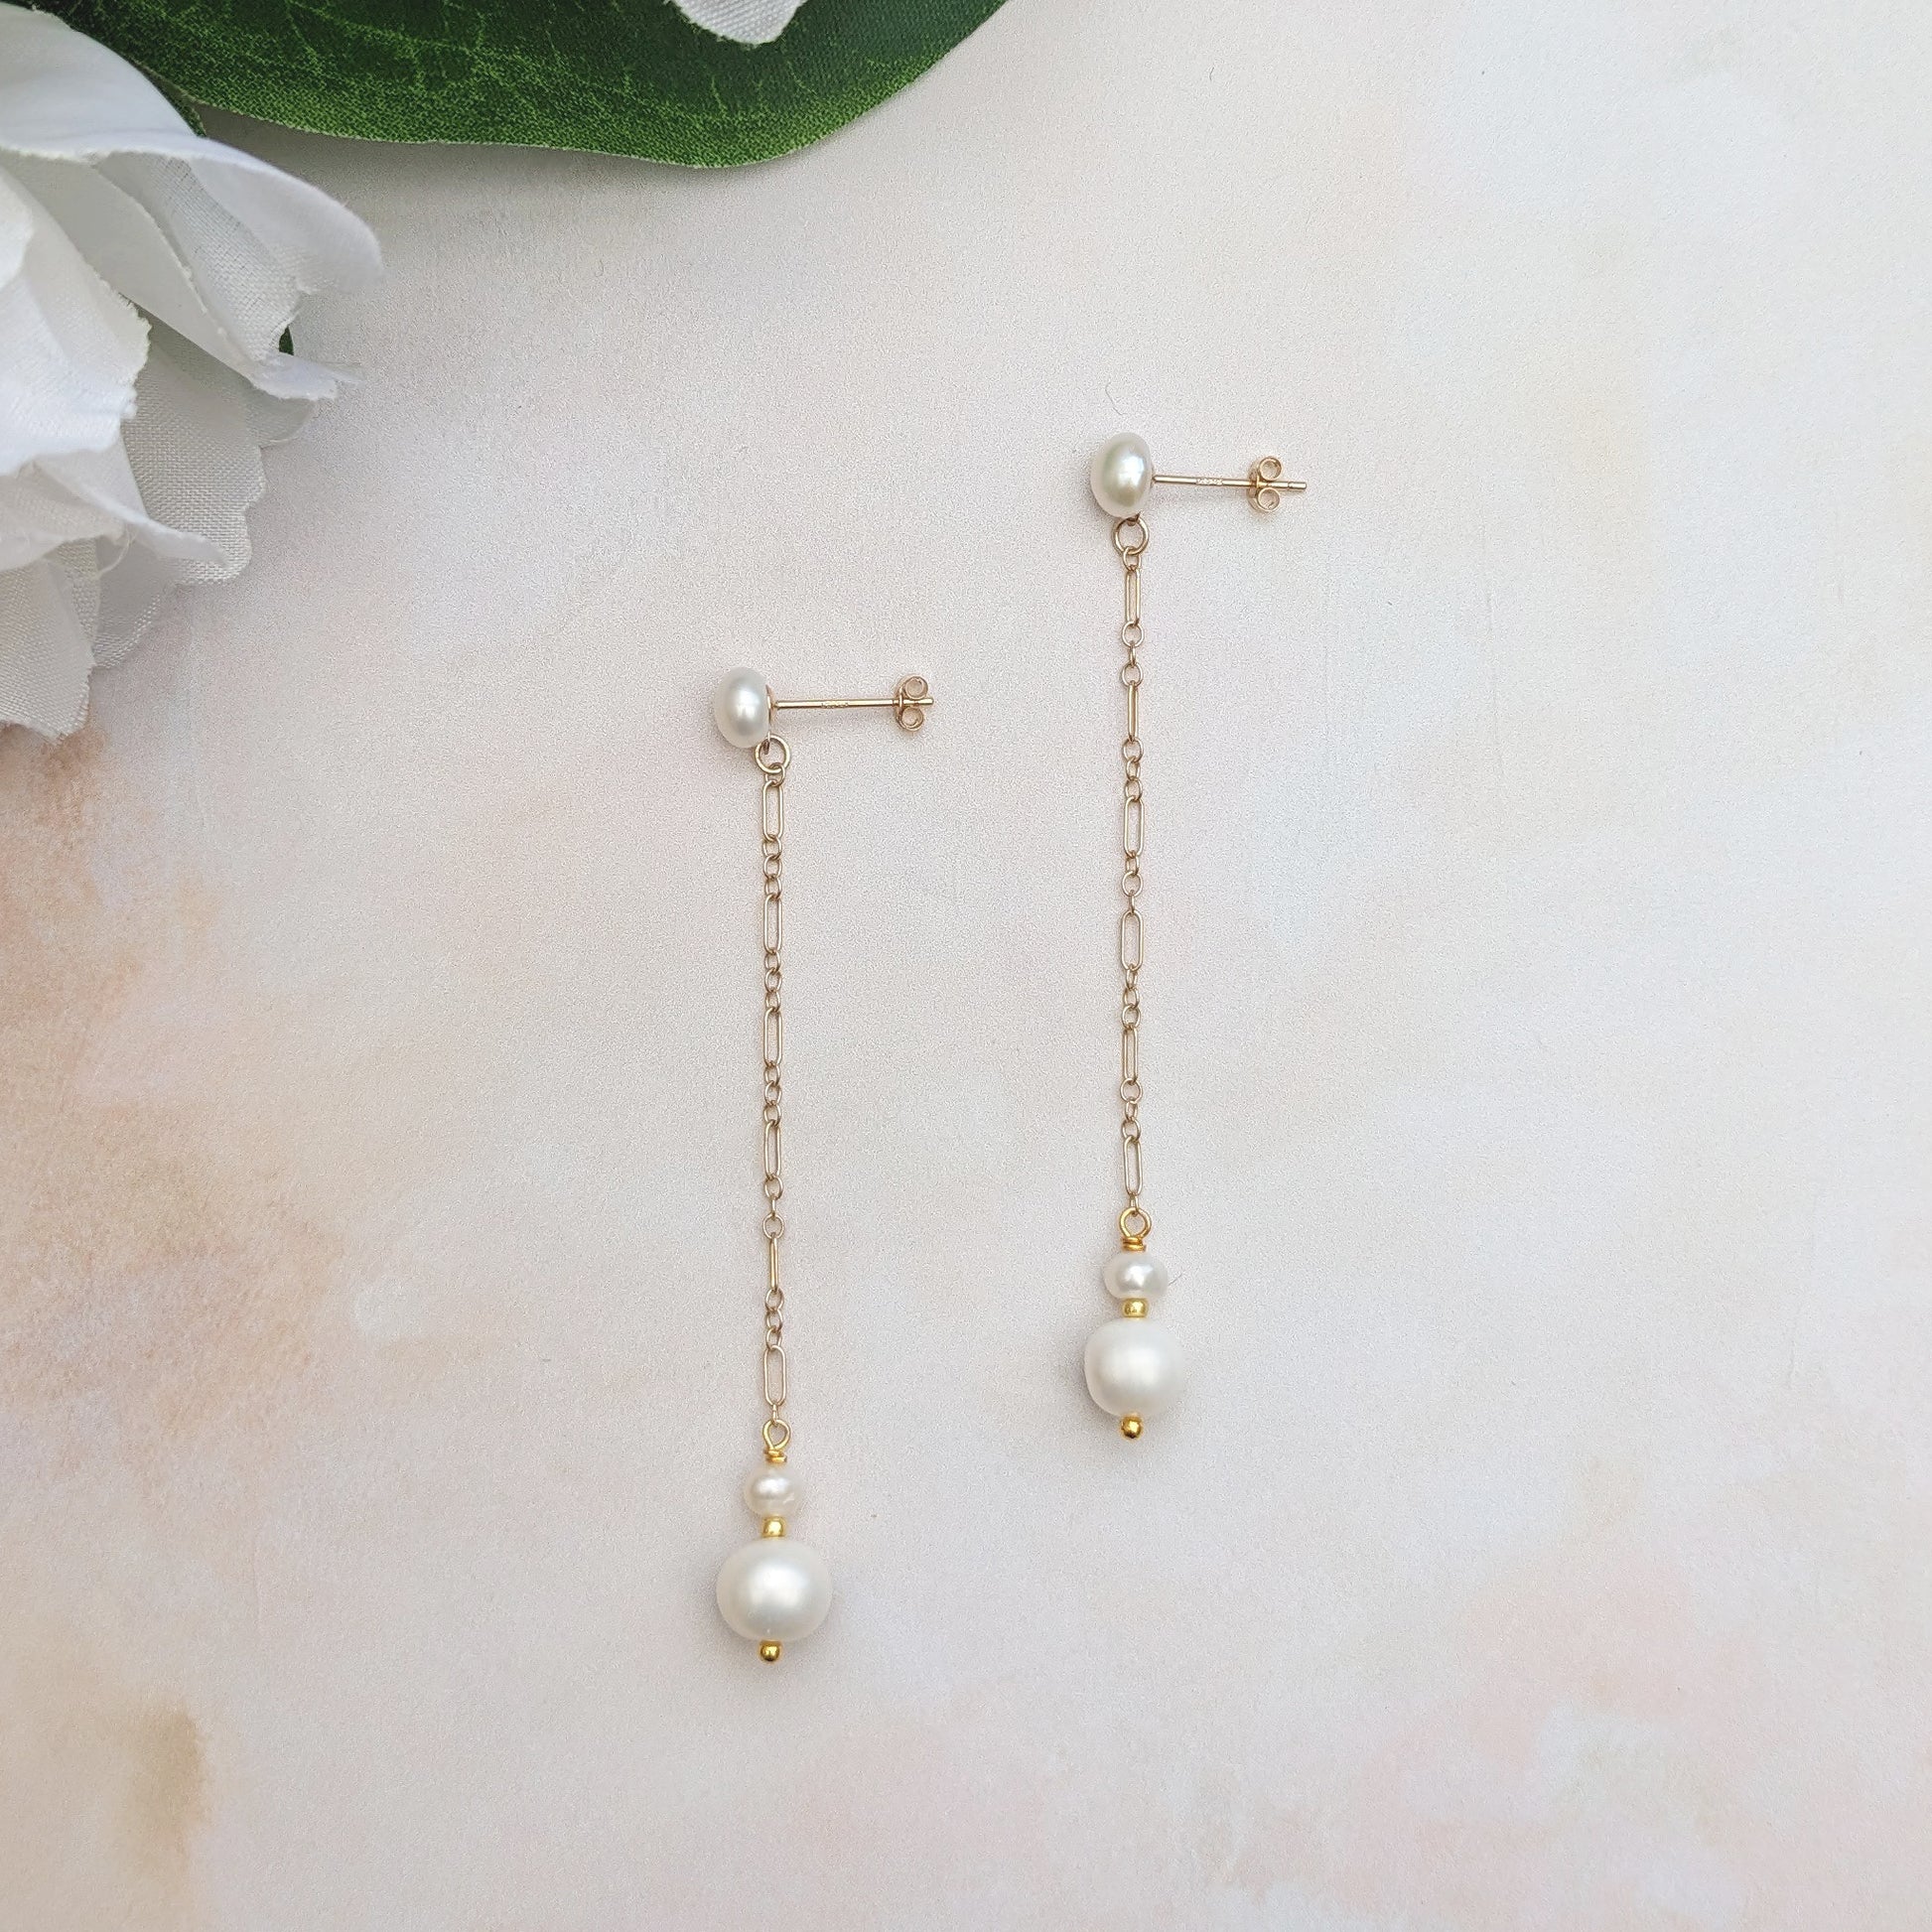 Pearl wedding earrings for brides - Susie Warner